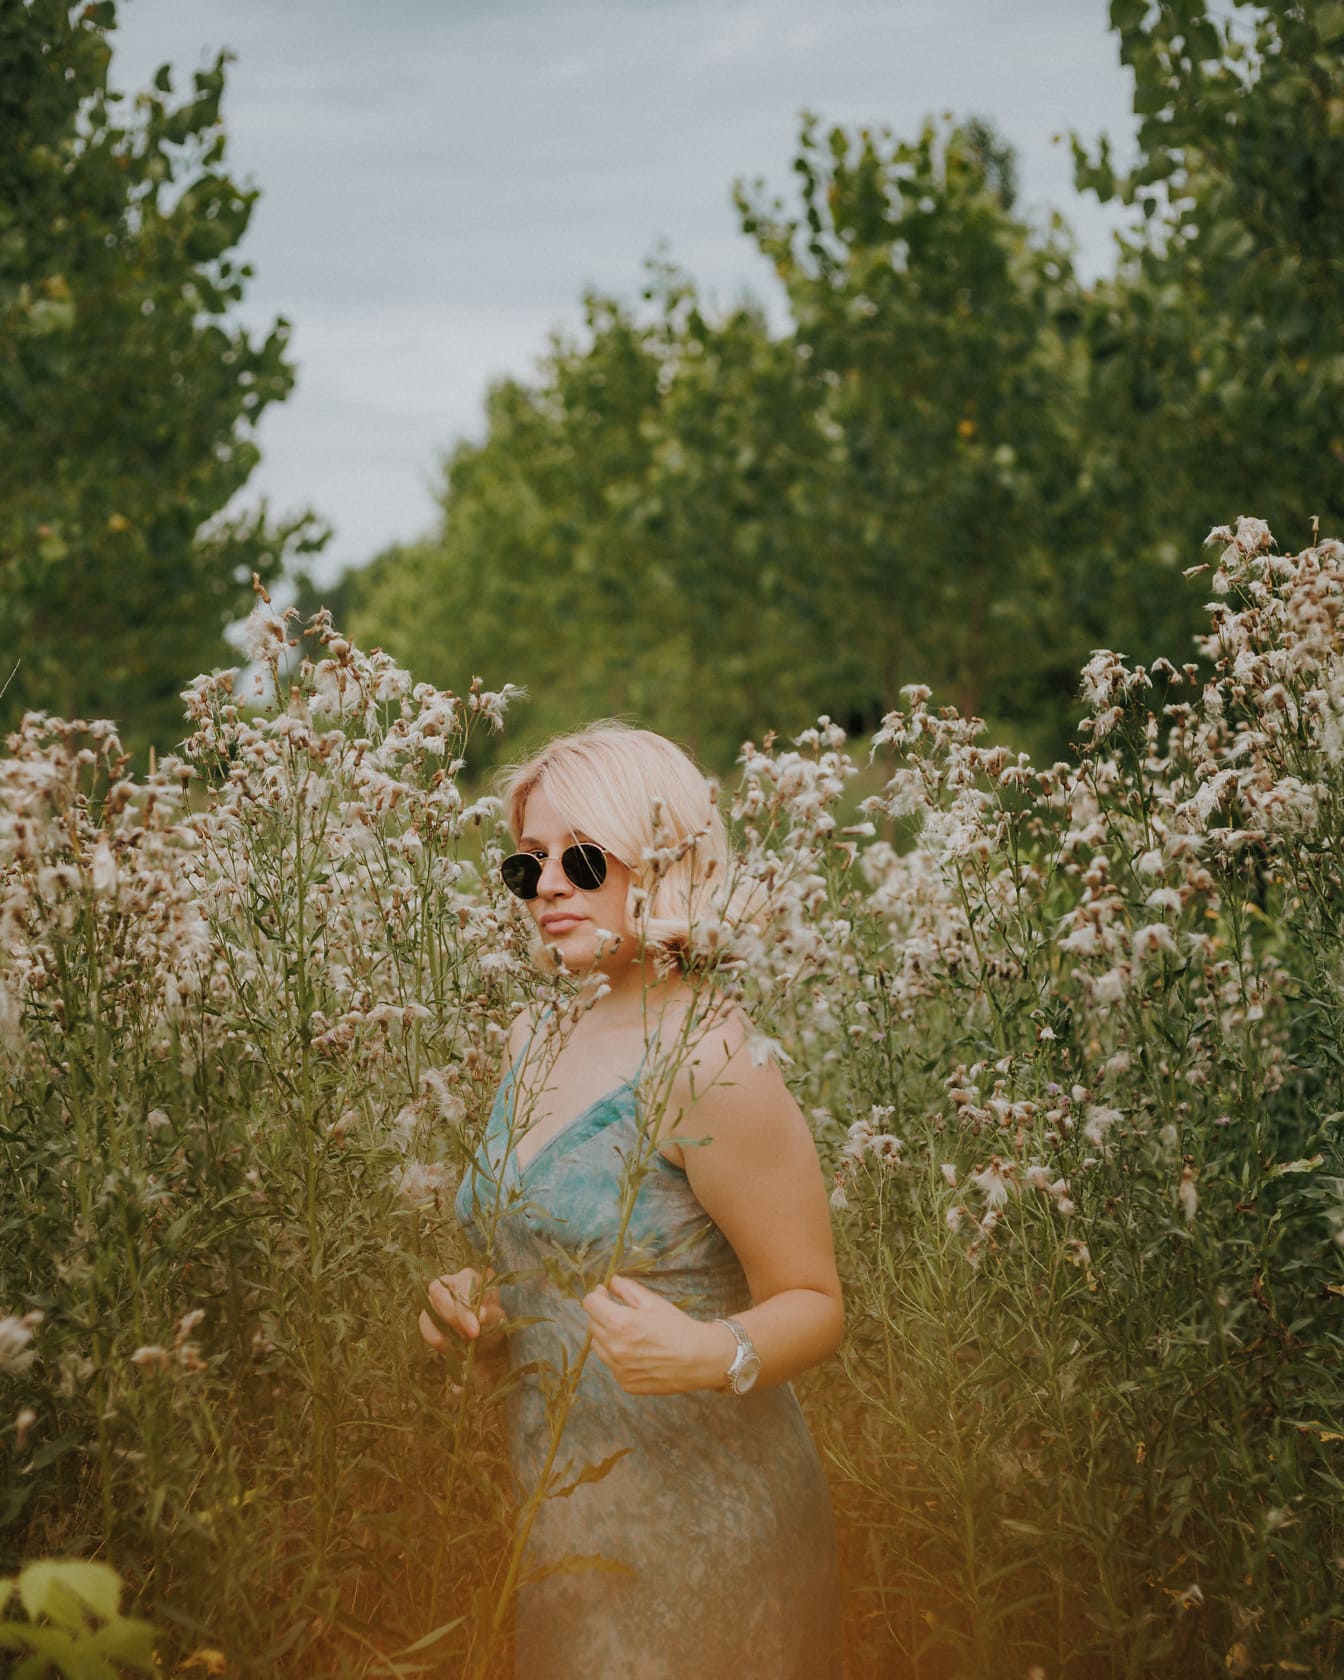 Nádherná blondínka pózujúca na lúke s vysokou trávou